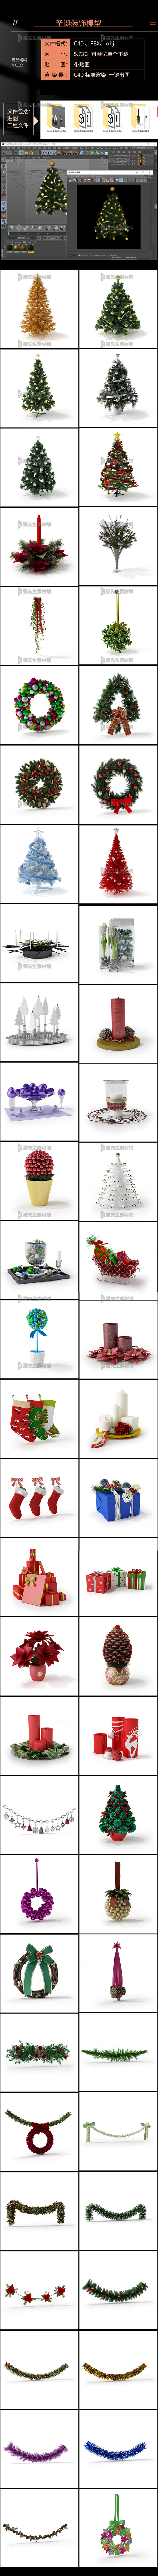 60个C4D obj fbx 圣诞元素模型标准渲染带贴图树礼盒袜子松子蜡烛铃铛 图片素材 第2张